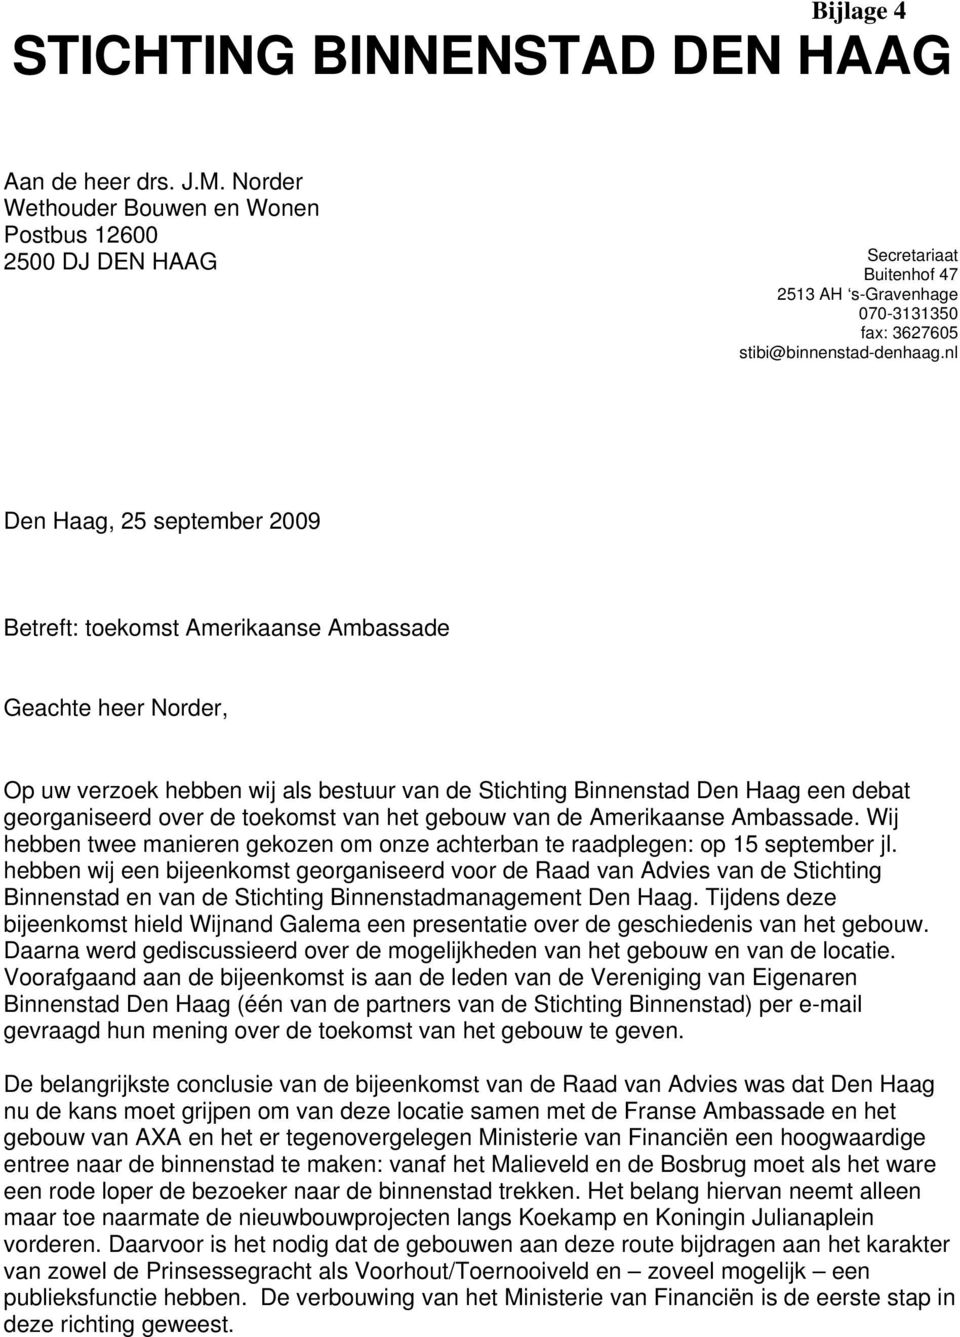 nl Den Haag, 5 september 009 Betreft: toekomst Amerikaanse Ambassade Geachte heer Norder, Op uw verzoek hebben wij als bestuur van de Stichting Binnenstad Den Haag een debat georganiseerd over de